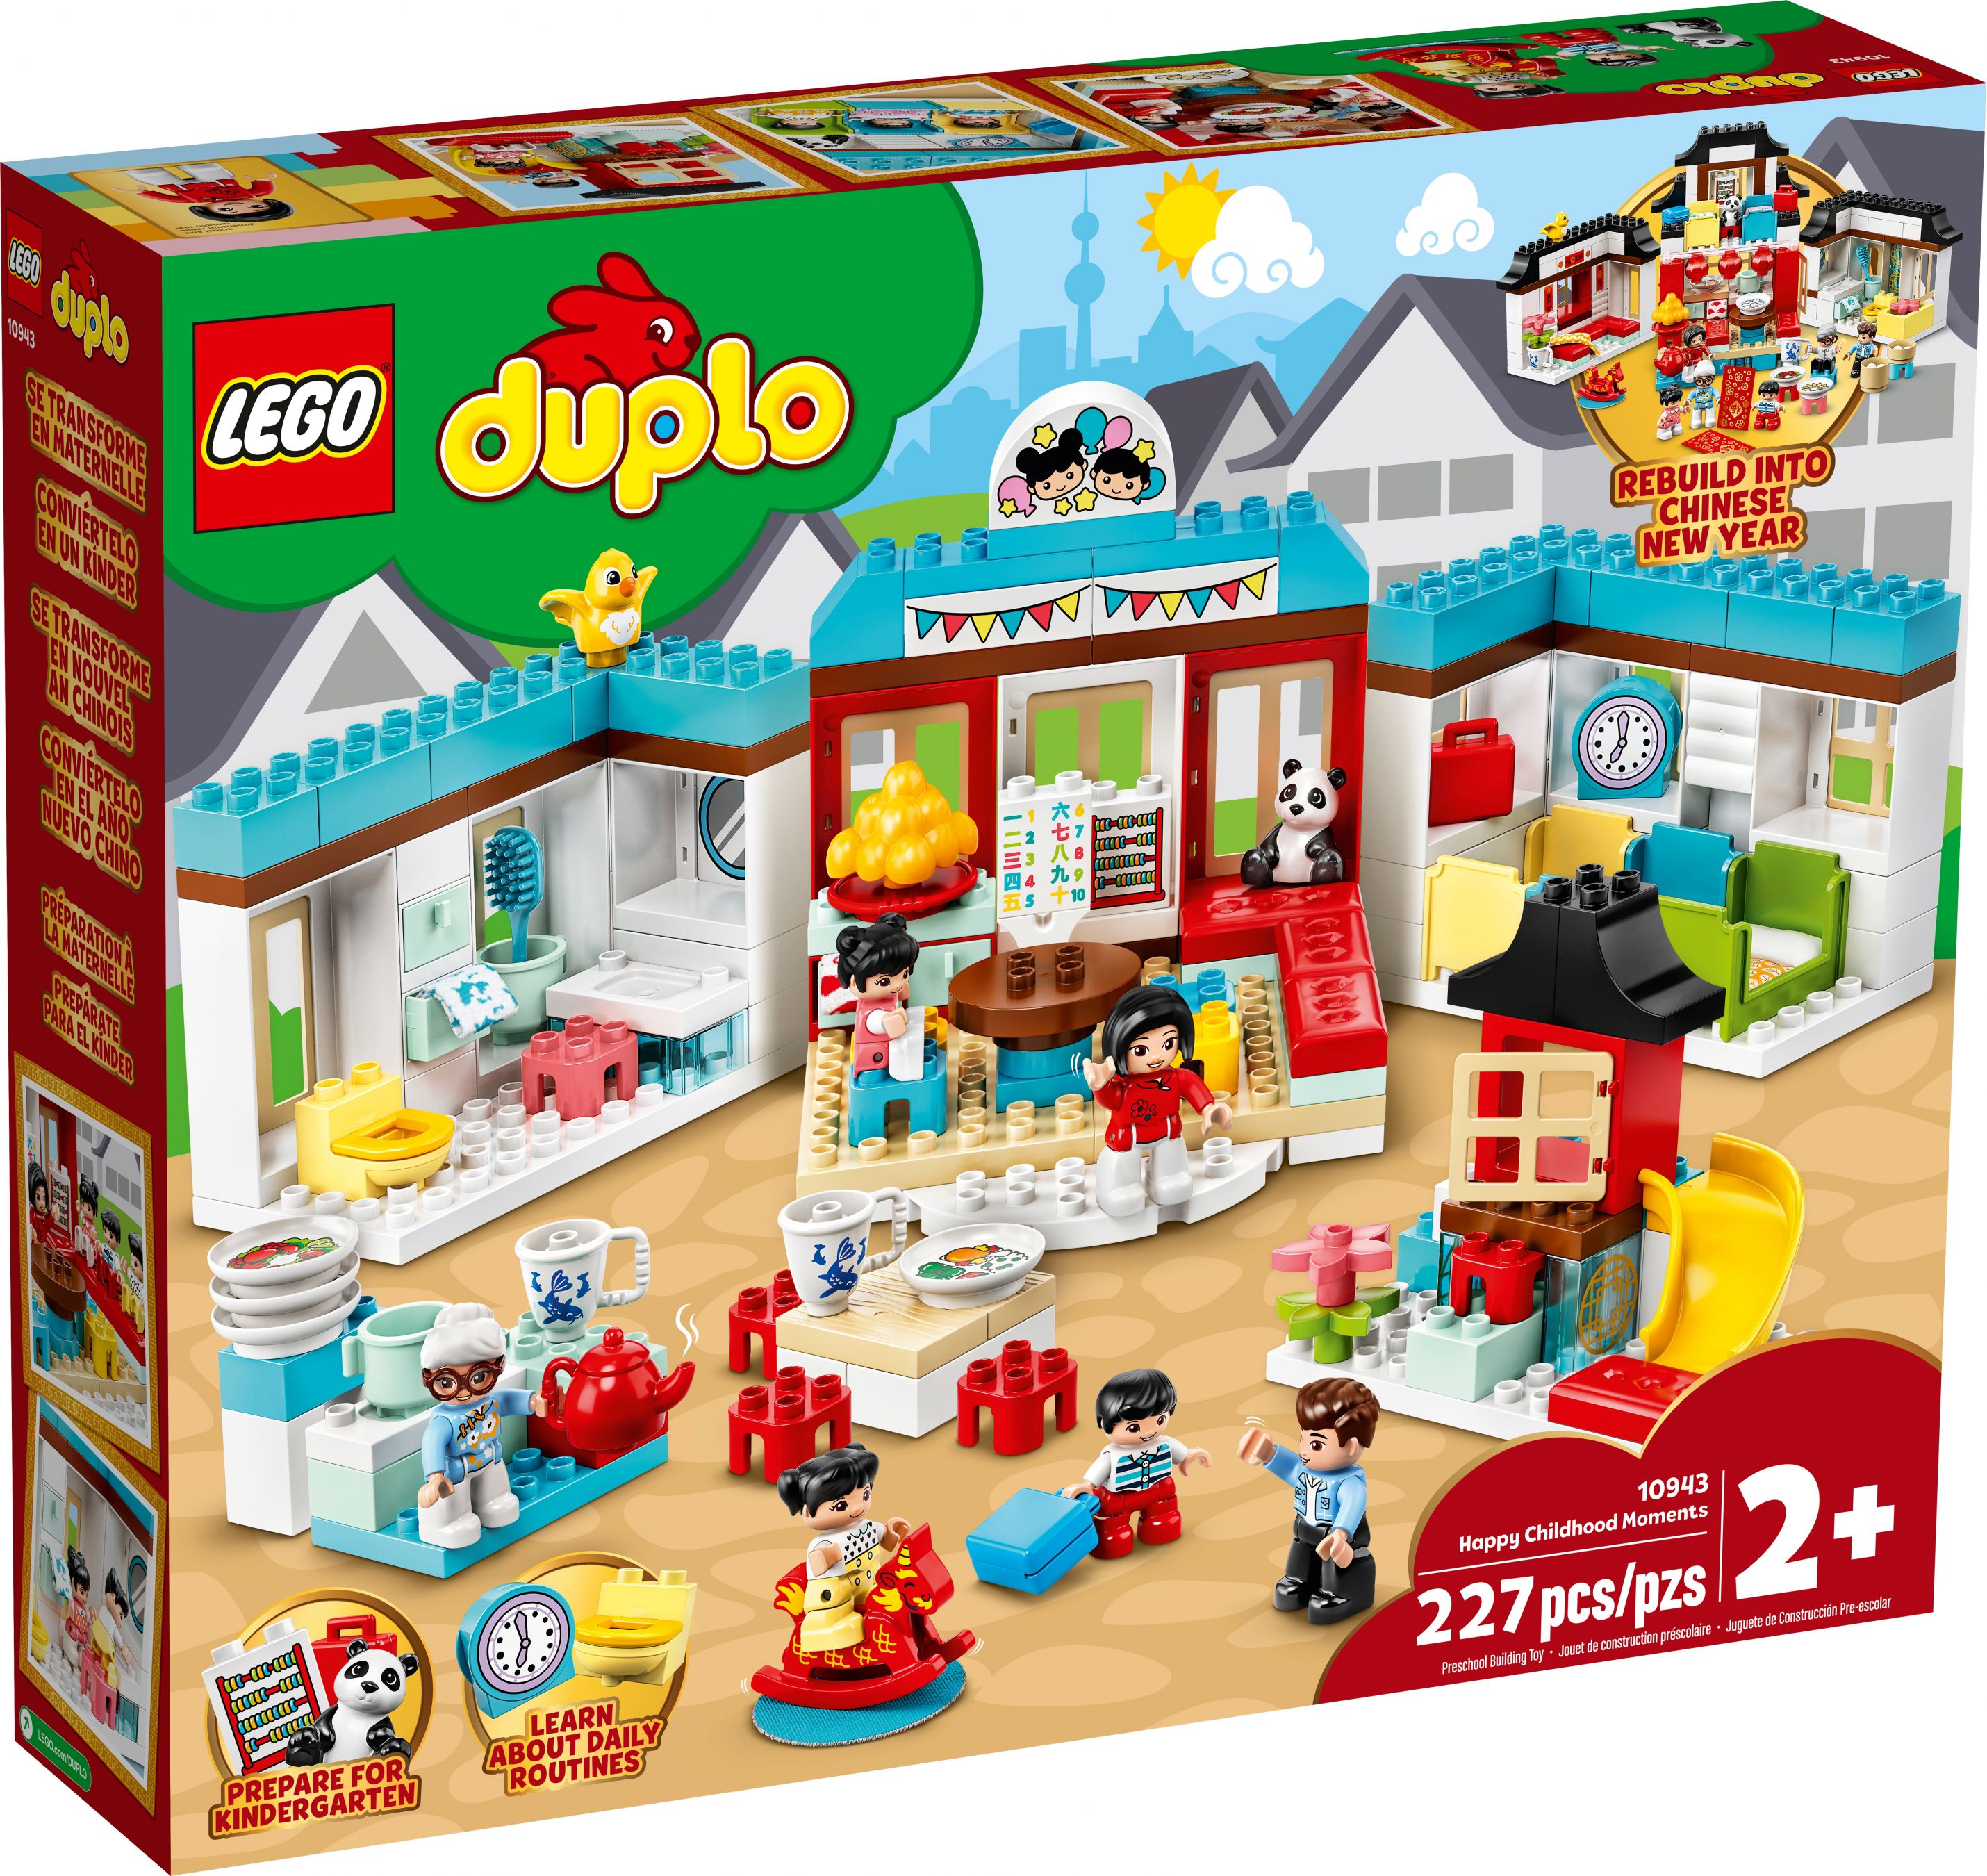 LEGO Duplo 10943 Glückliche Kindheitsmomente LEGO_10943_alt15.jpg